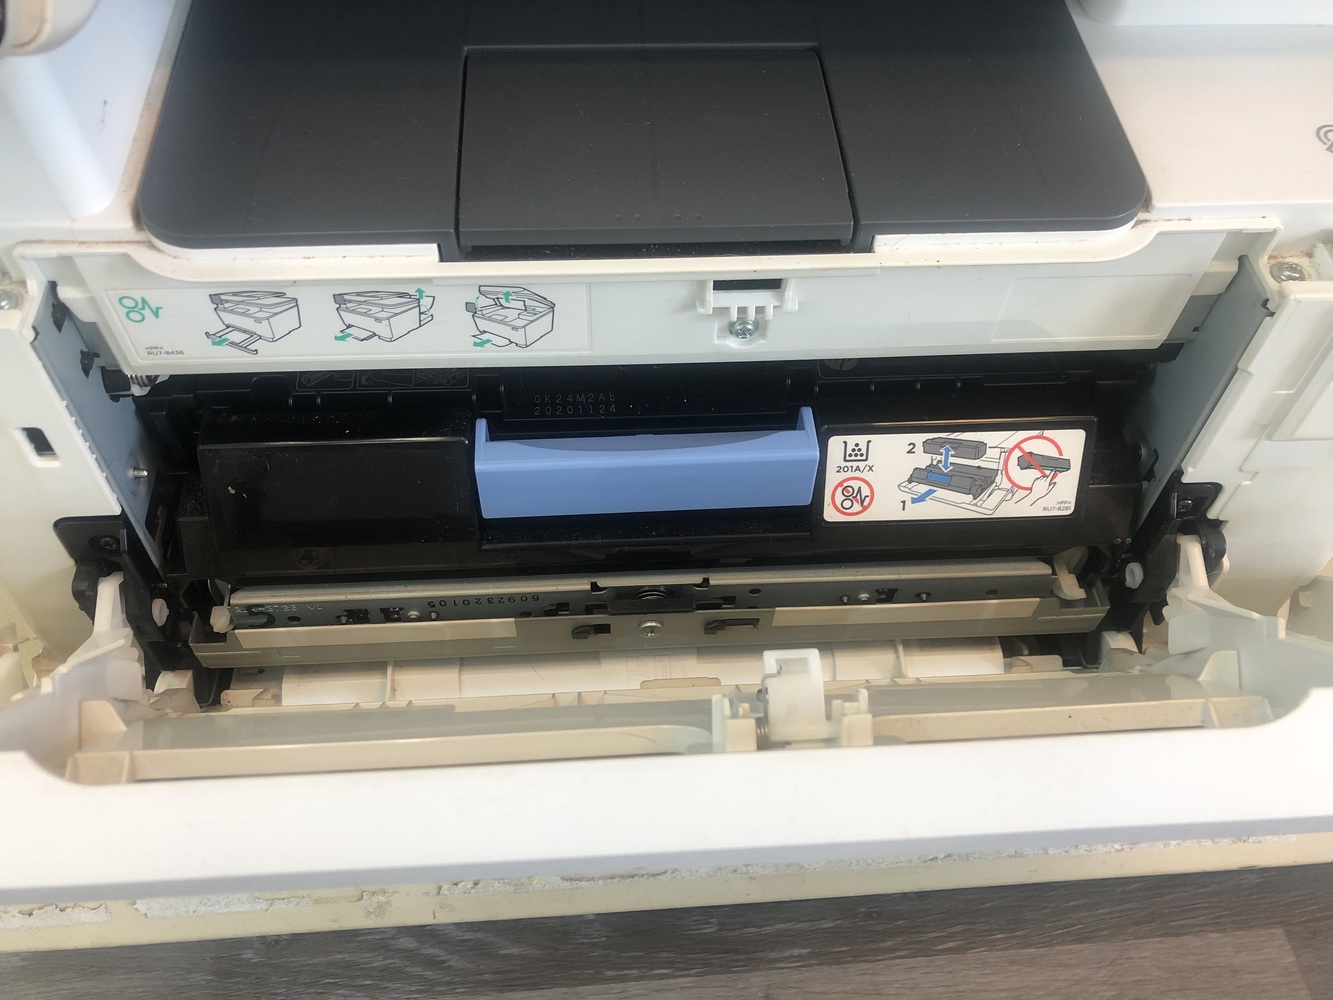 HP Color Laserjet Pro MFP M277dw Printer Copier Scanner Fax WIFI Wireless/used